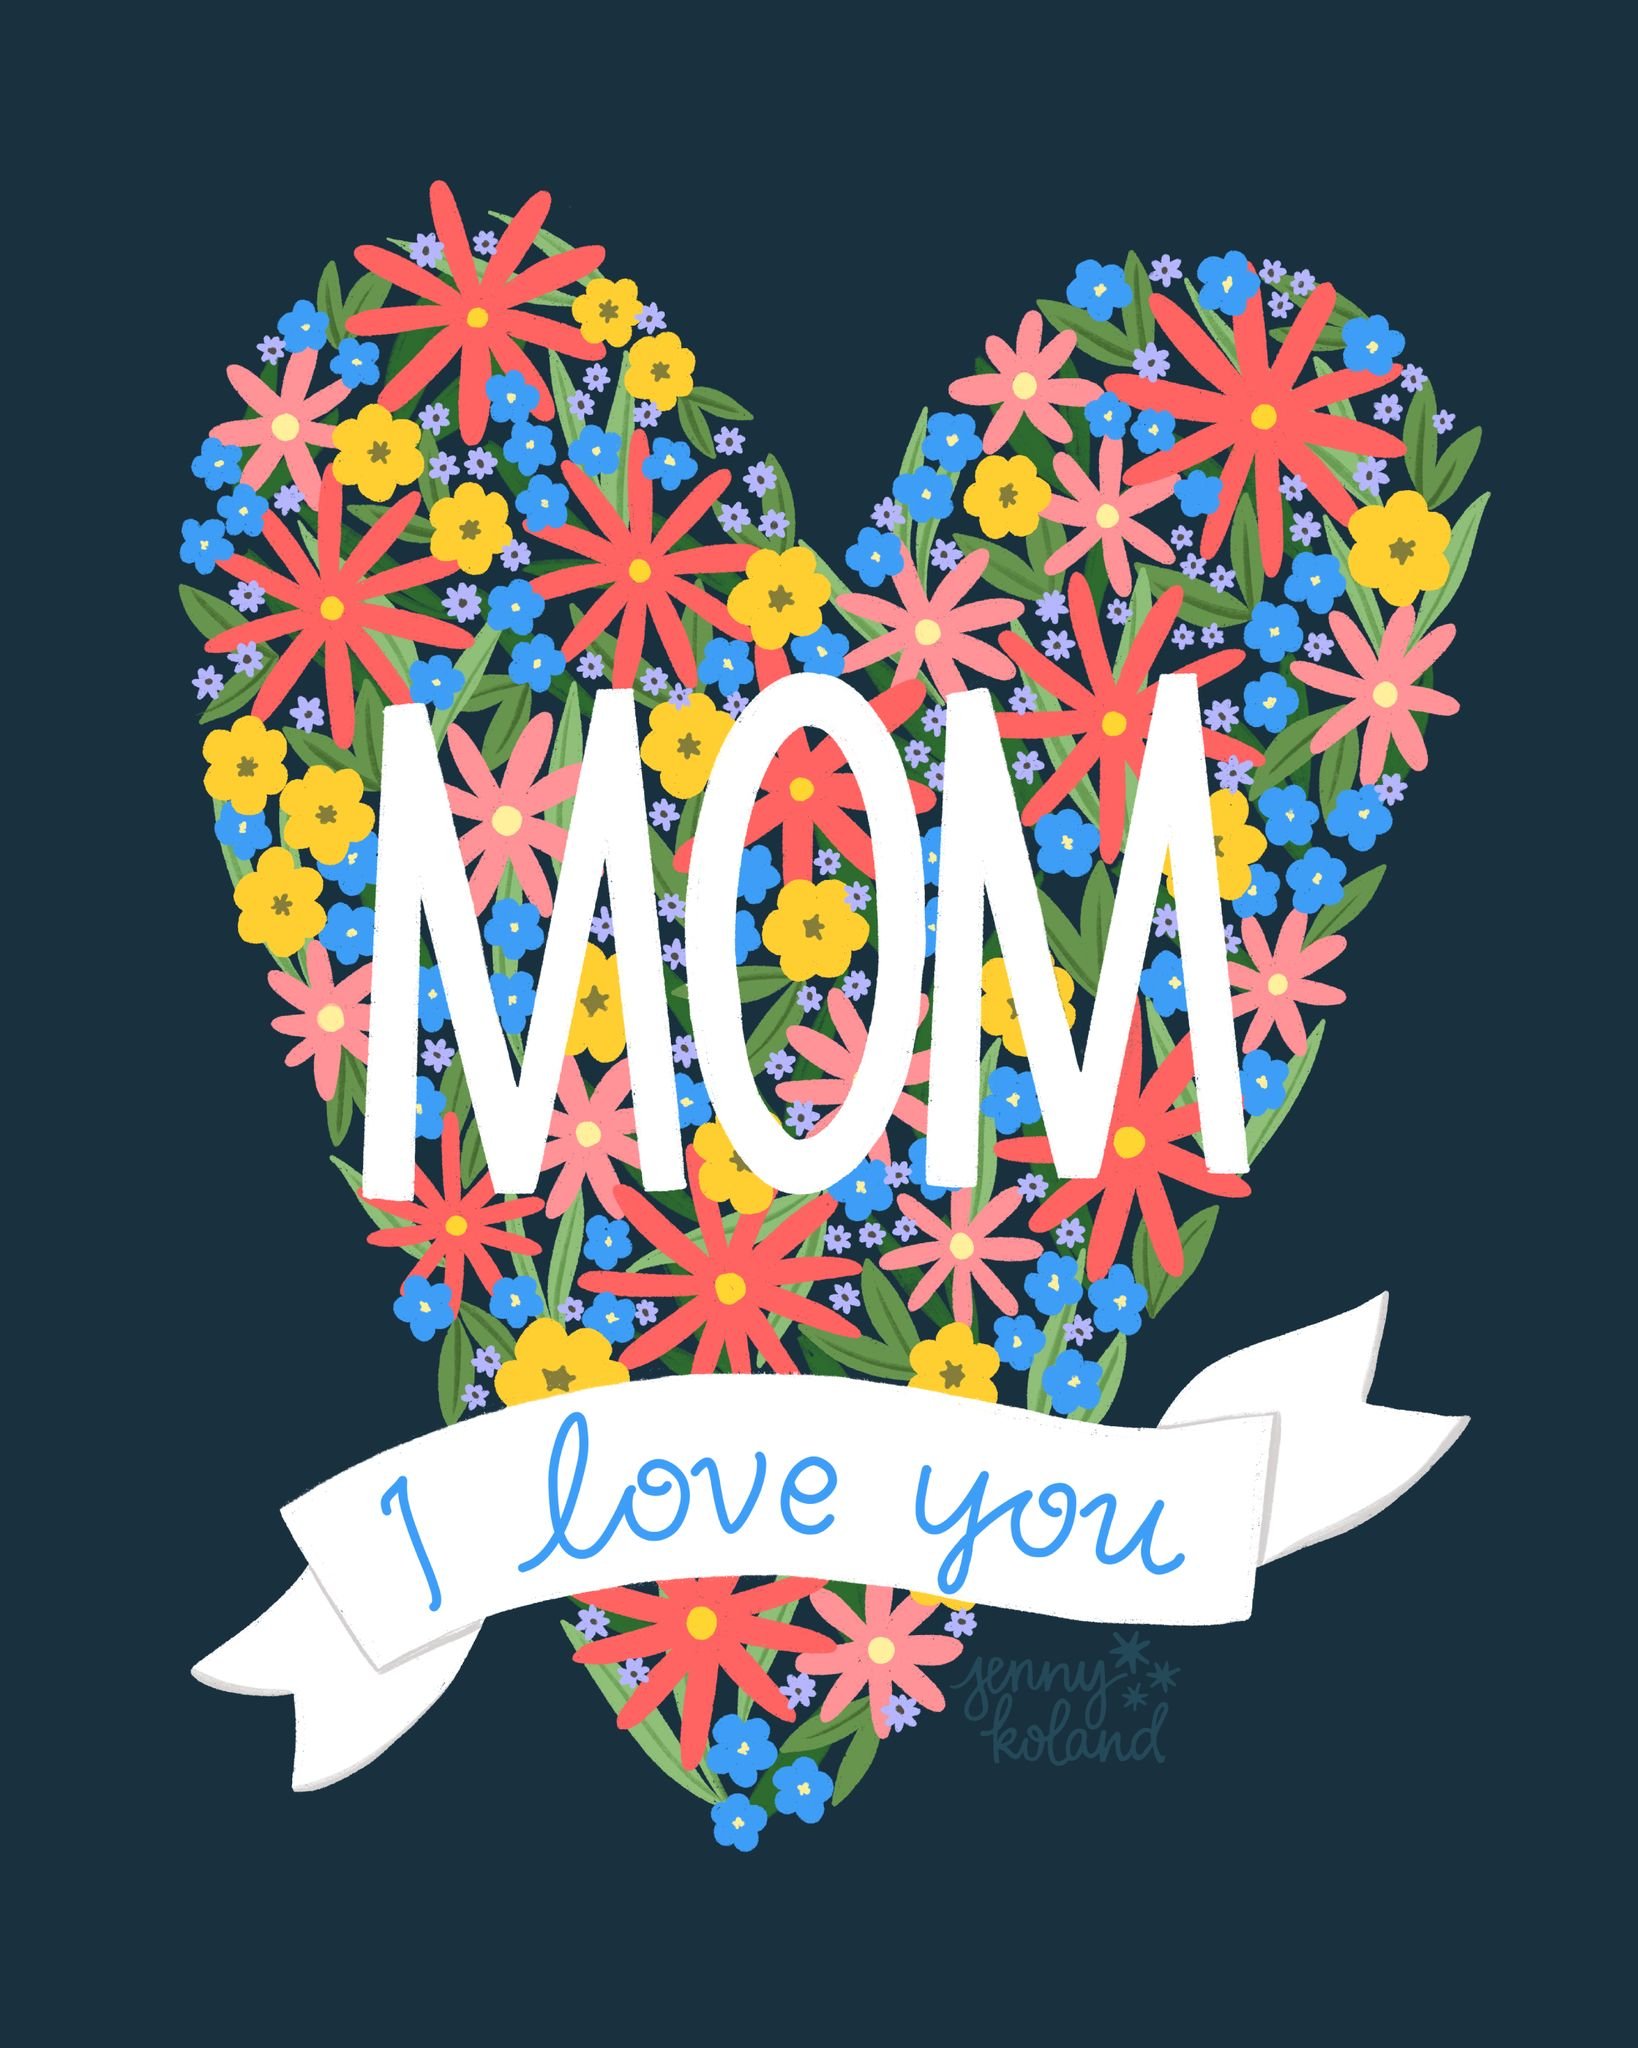 Big love to all the moms today ❤️ 

#mothersday #mothersdaycard #greetingcarddesign #dhgartspark #surfacedesign #artlicensing #artforlicensing #mothersdayillustration #mothersdayart